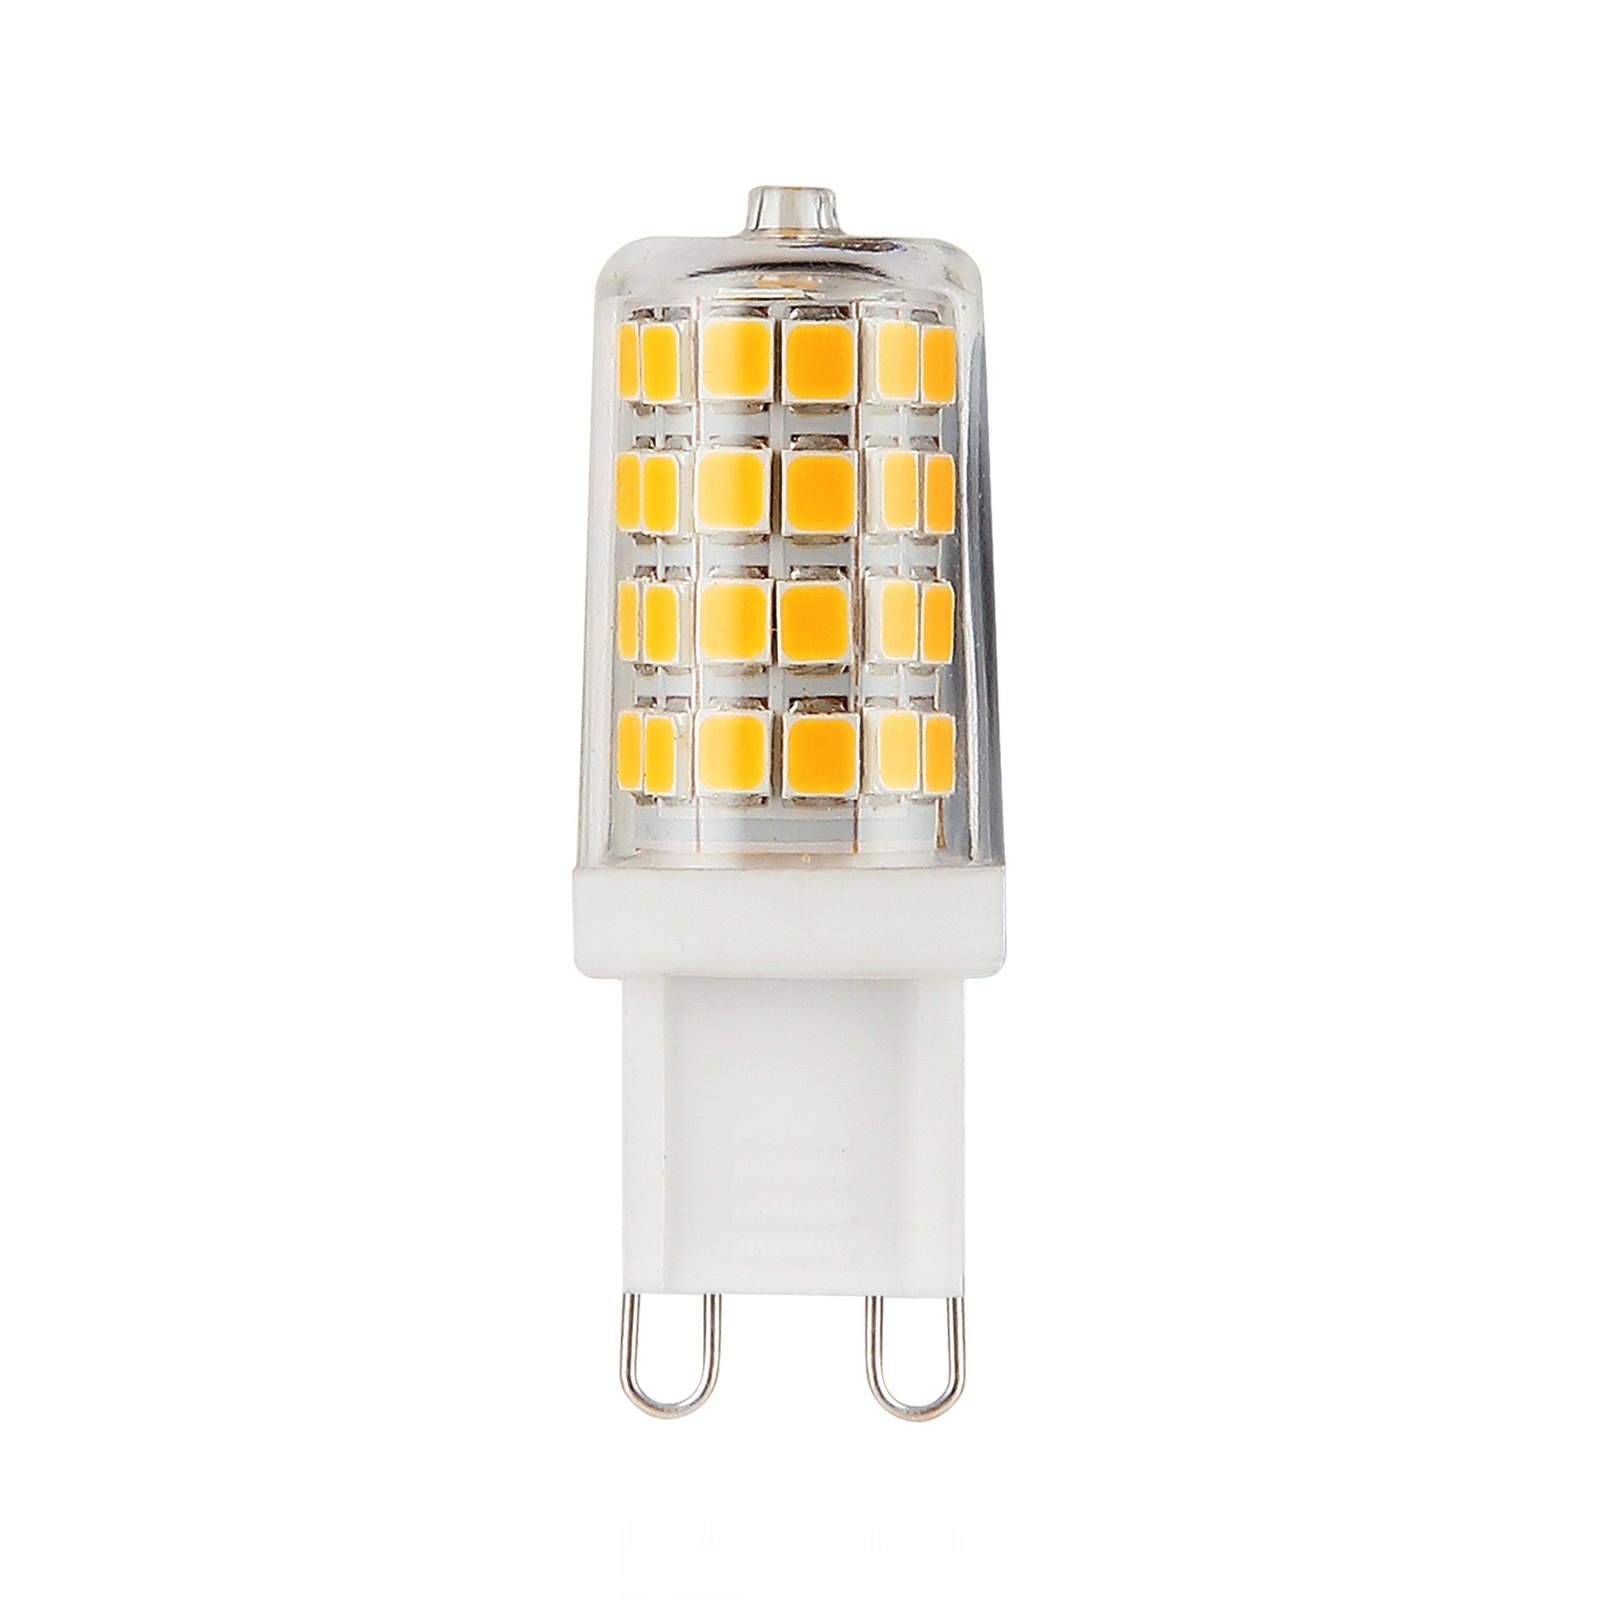 LED stiftlamp G9 3W universeel wit 4000K 350 Lumen